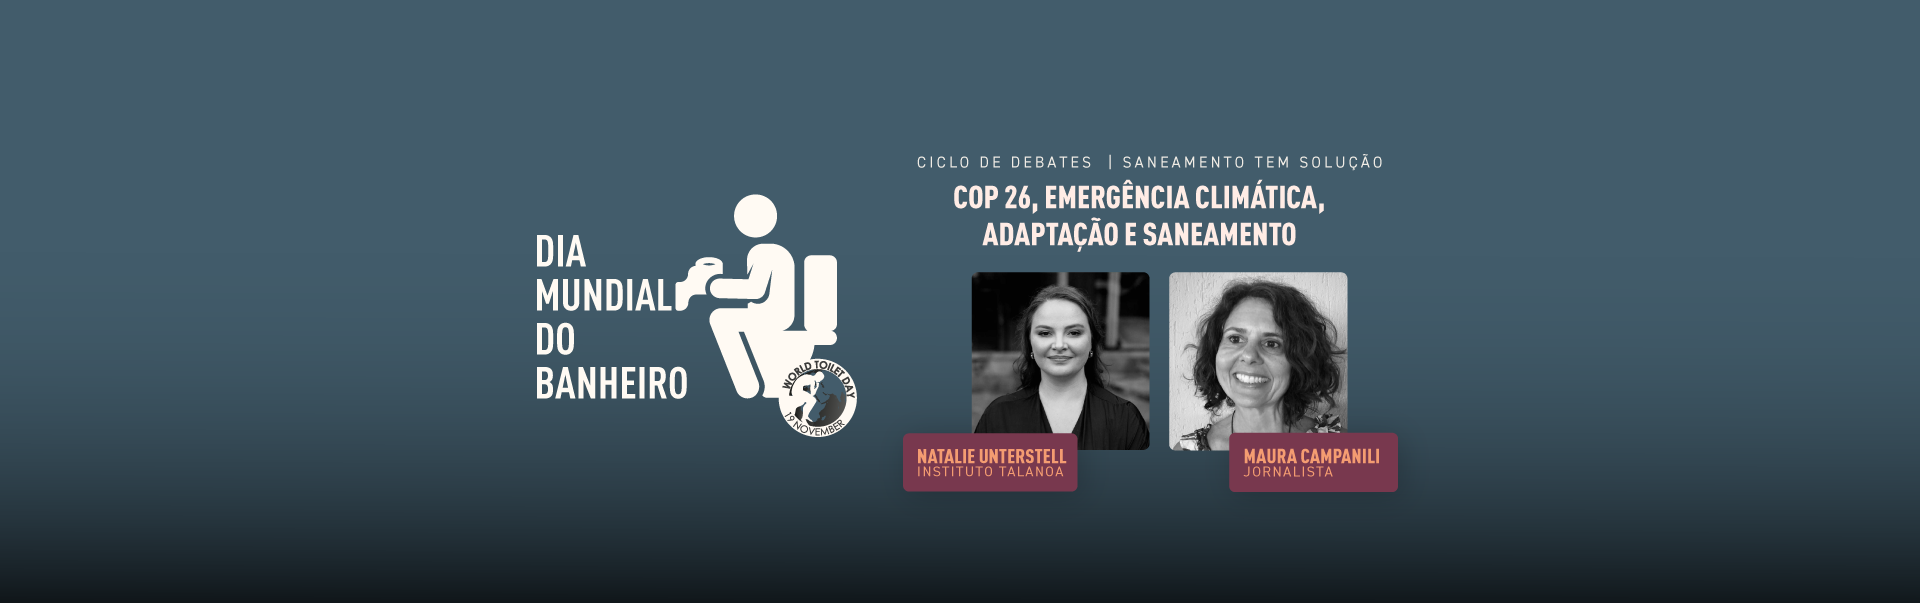 COP 26, Emergência Climática, Adaptação e Saneamento, com Natalie Unterstell